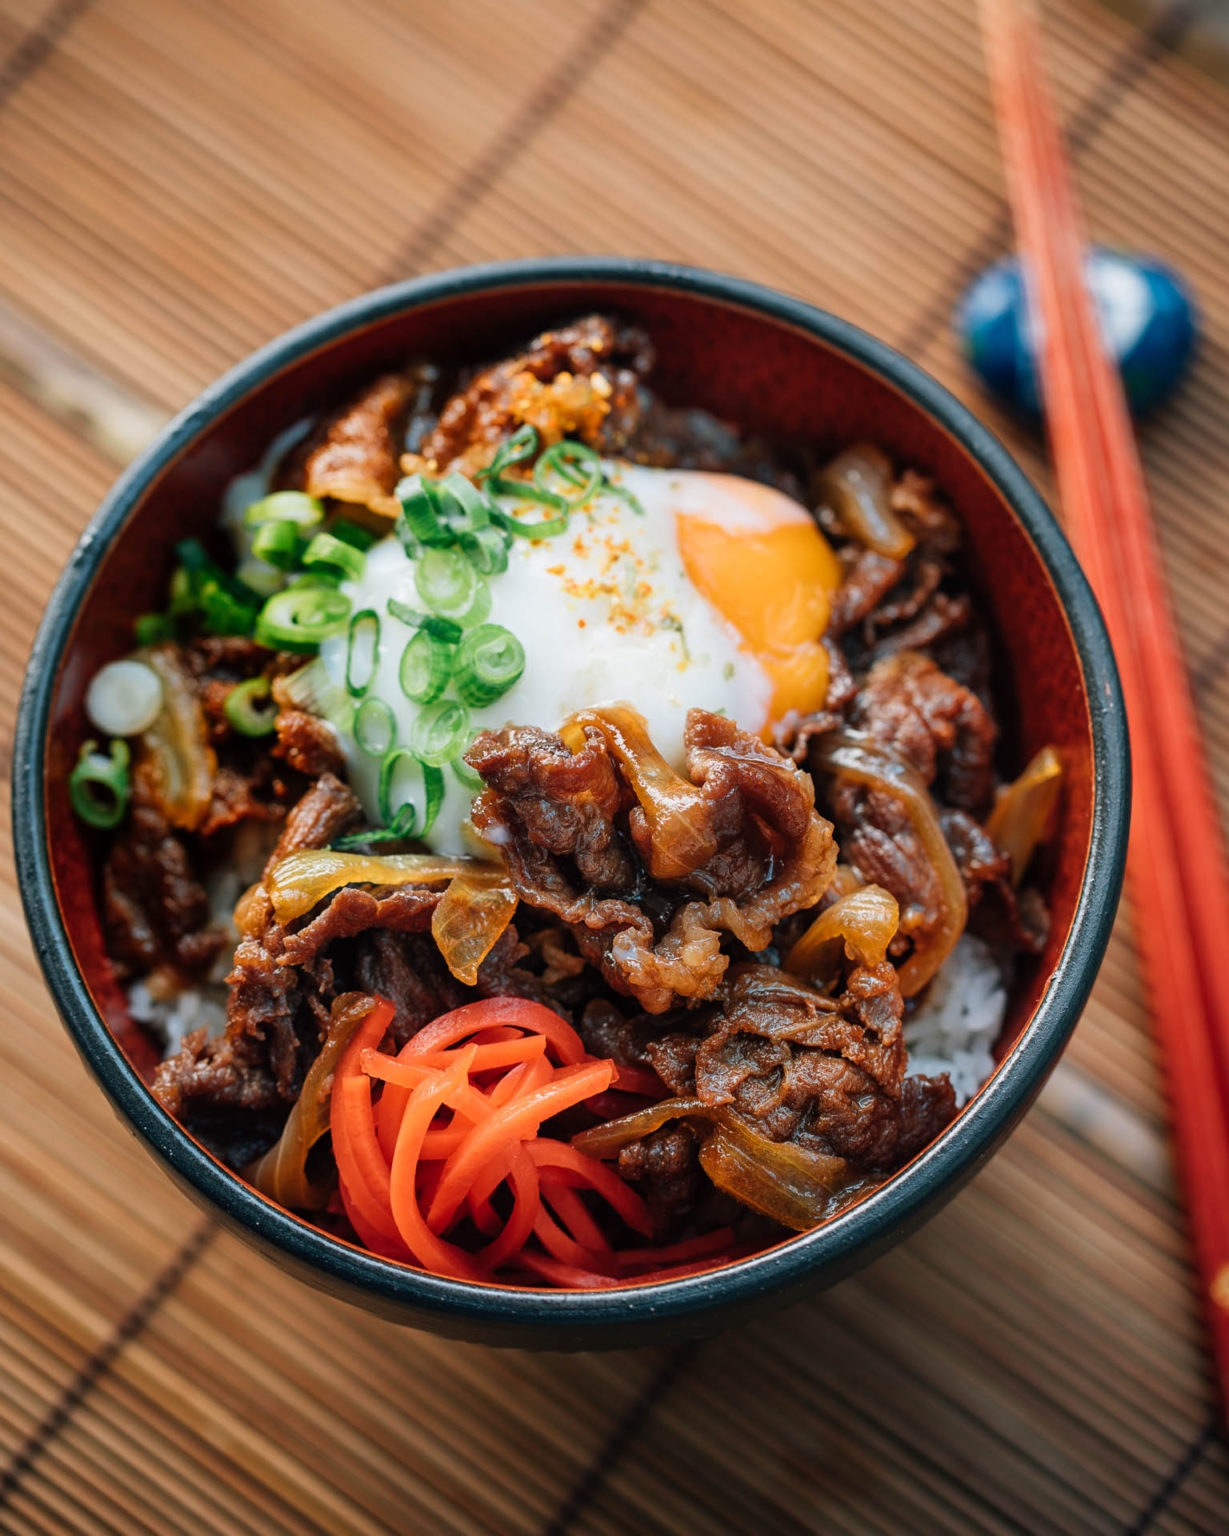 8 Resep Rice Bowl Berbagai Lauk Enak dan Mudah Dibuat | Flokq Blog